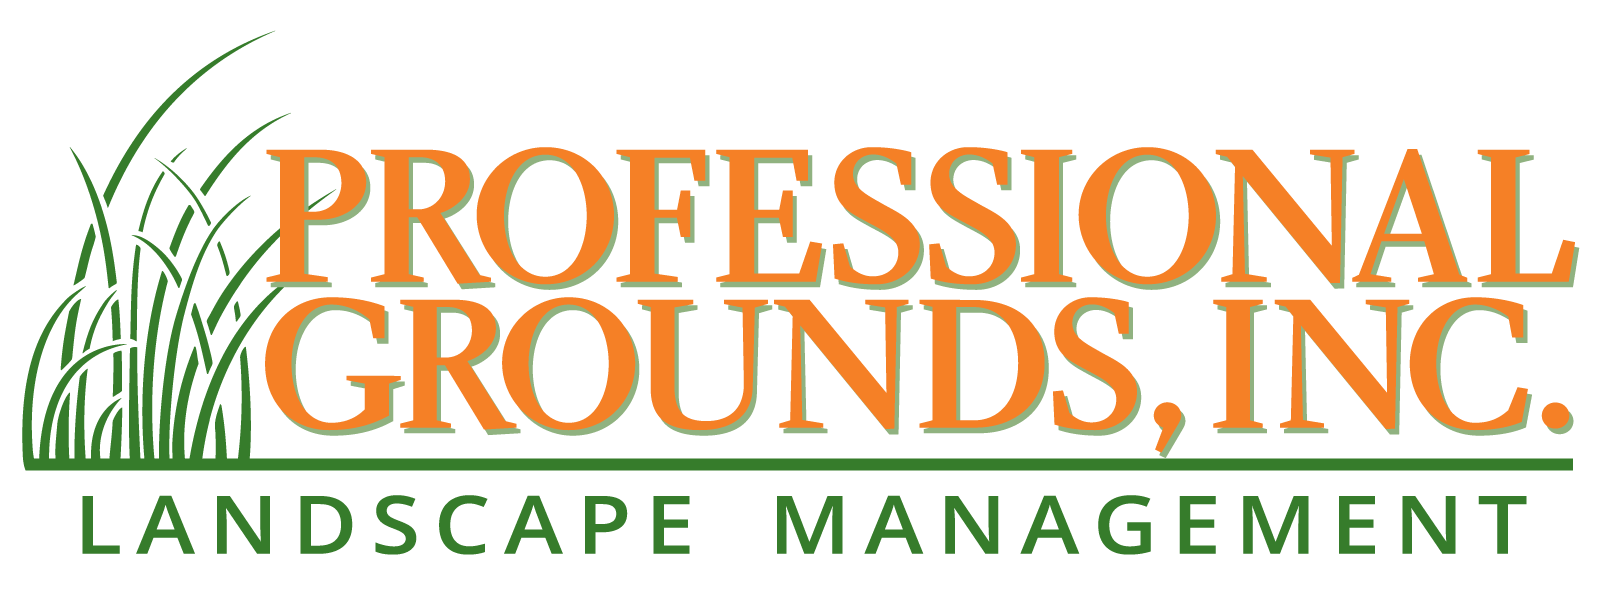 Professional Grounds Landscape Management